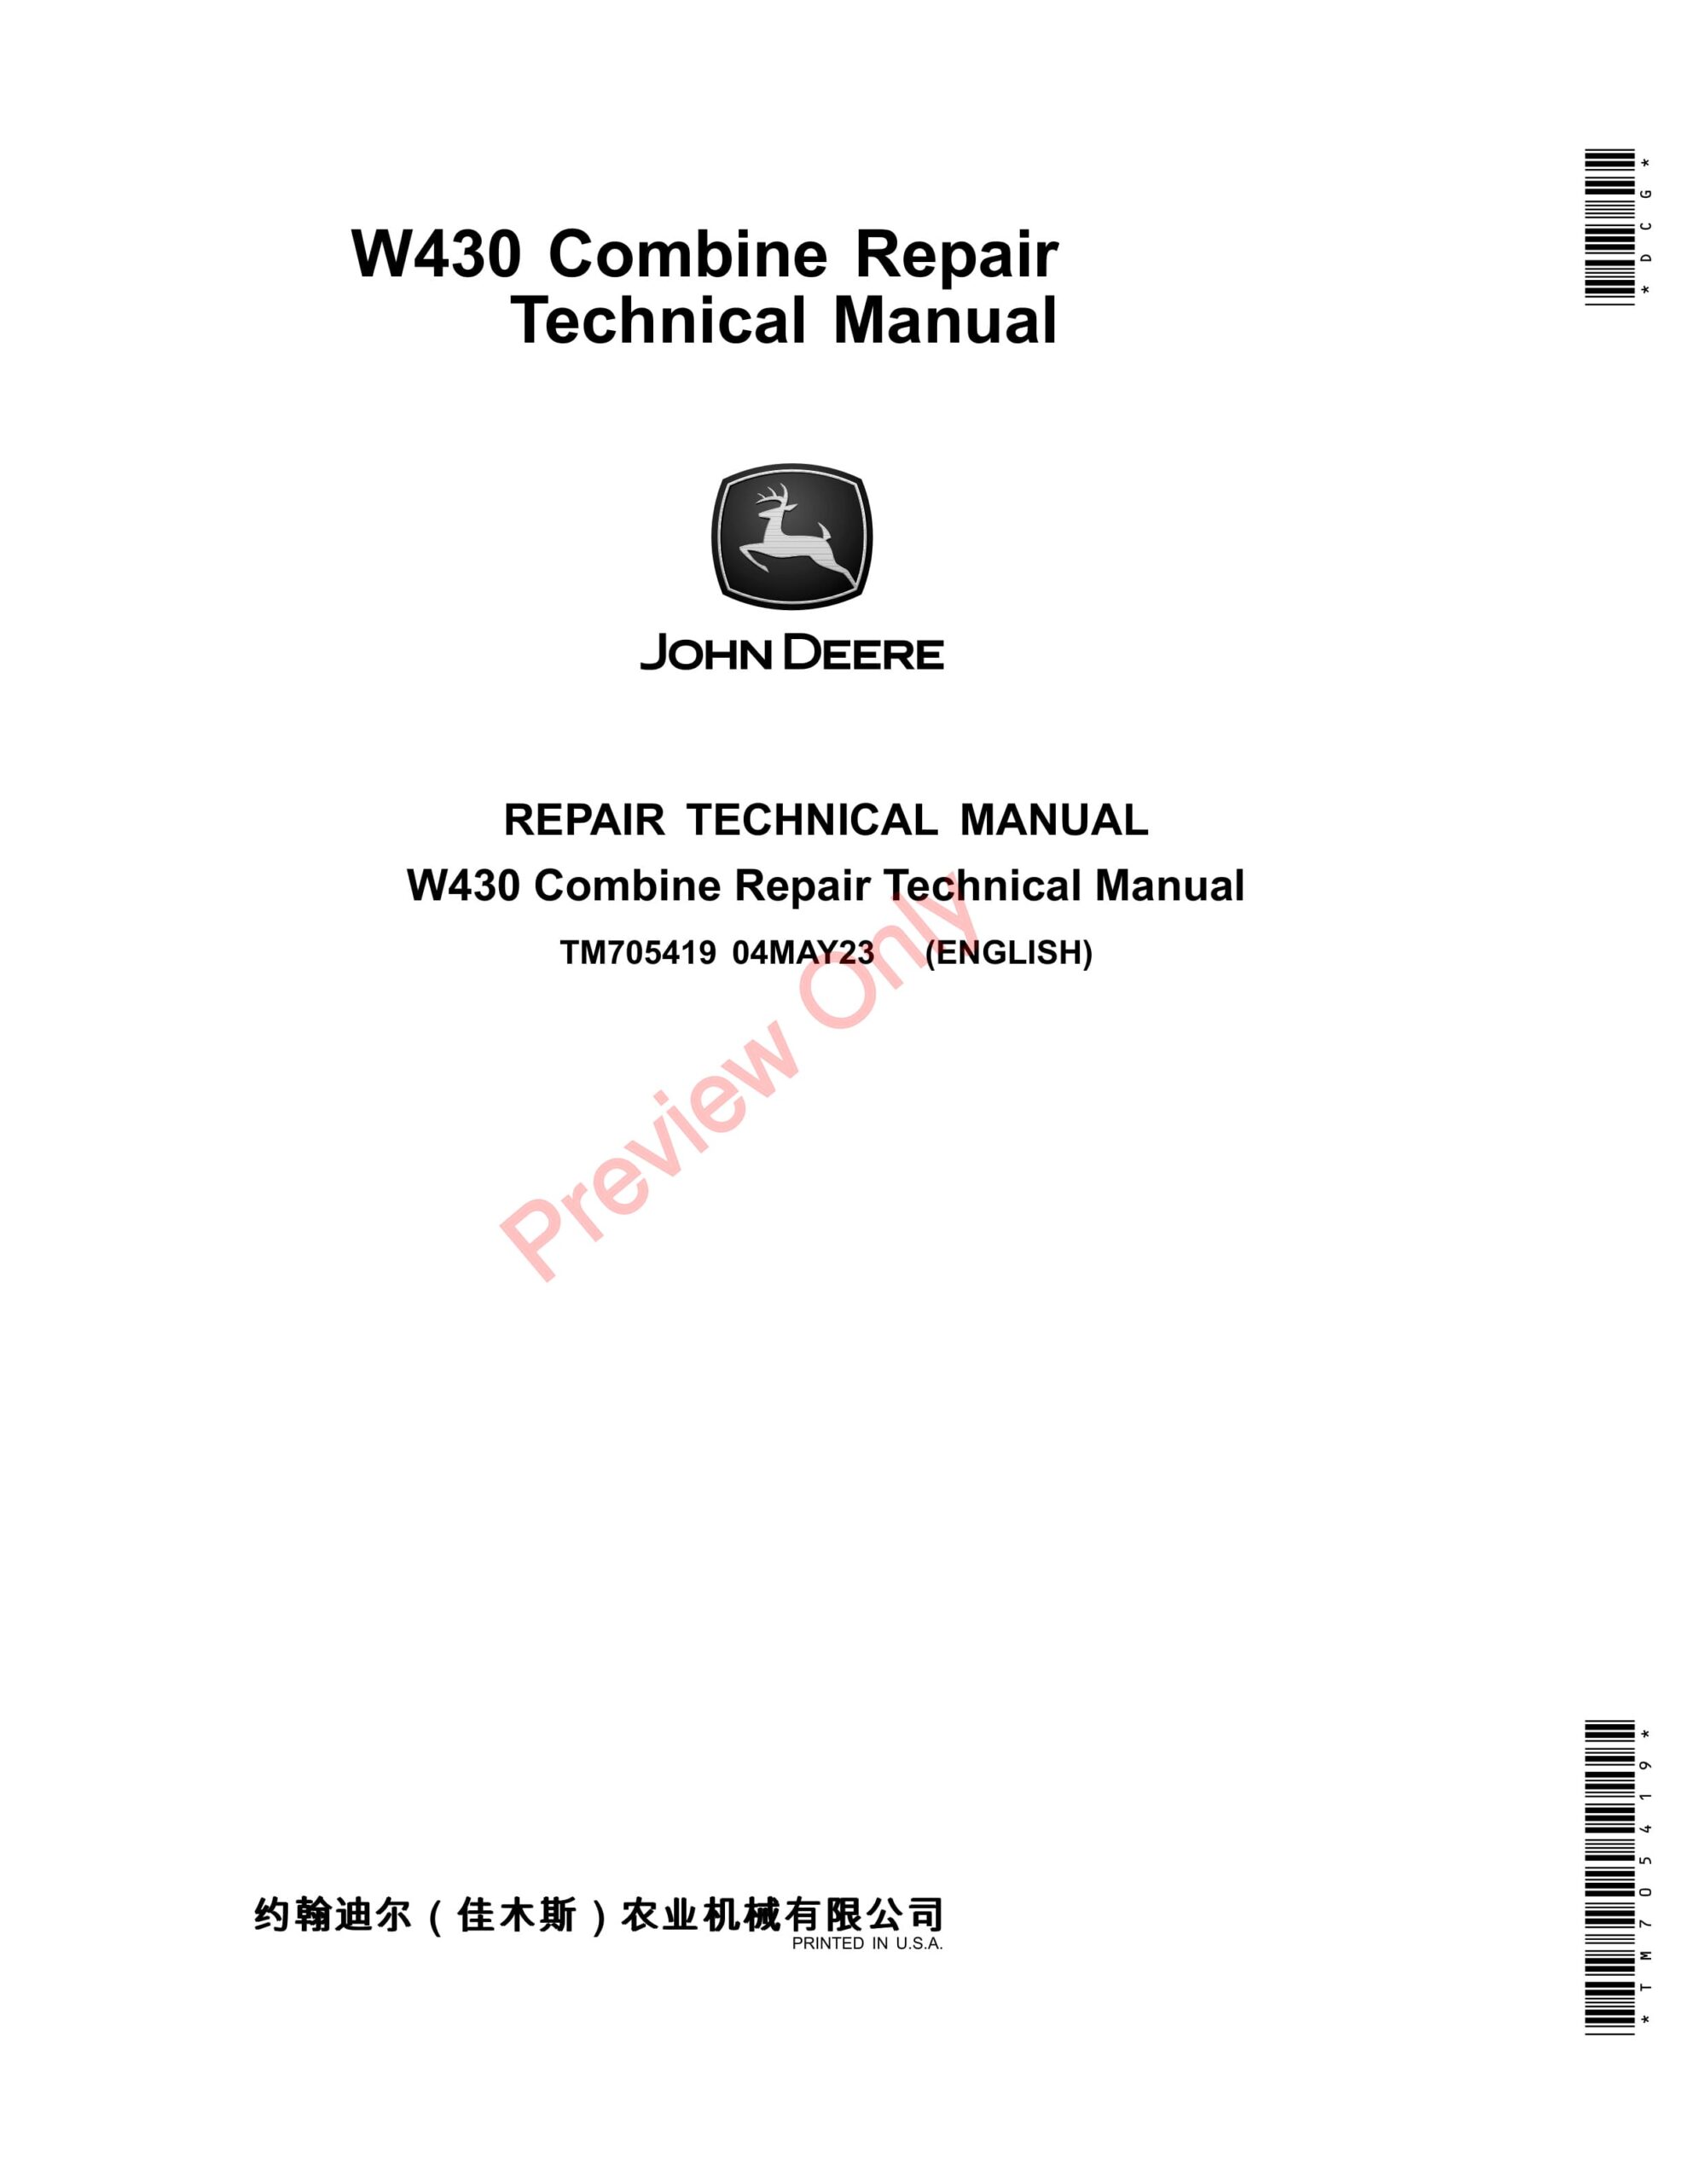 John Deere W430 Combine (035001 – 999999) Repair Technical Manual TM705419 04MAY23-1